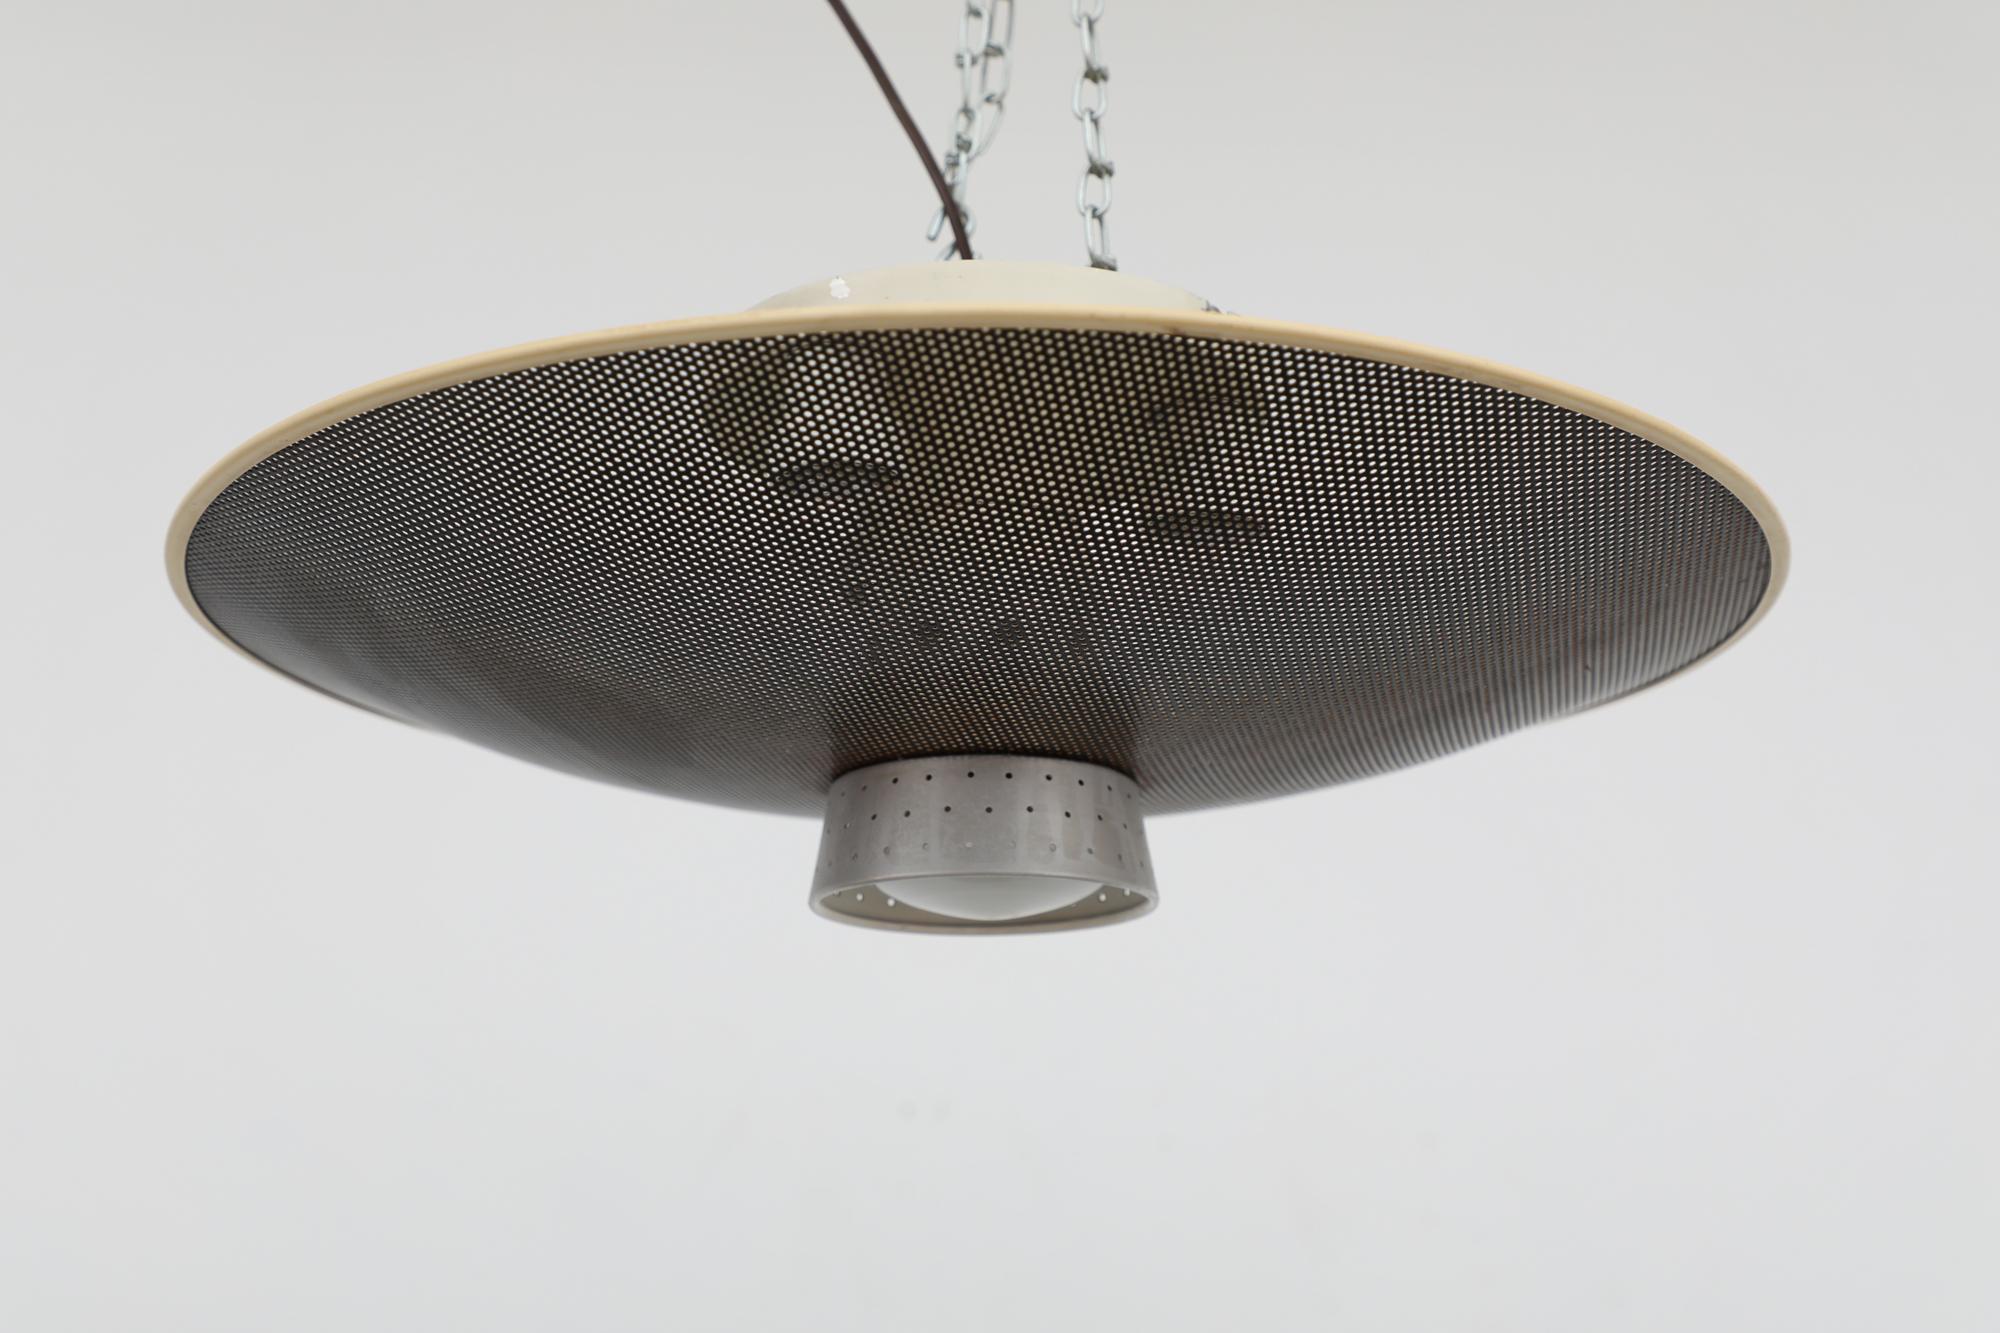 Plafonnier encastré des années 1960 conçu par Louis Kalff pour Philips. La lampe est dotée d'un abat-jour en forme de dôme perforé, de trois ampoules supérieures et d'une seule douille descendante logée dans un abat-jour en aluminium semi-perforé.